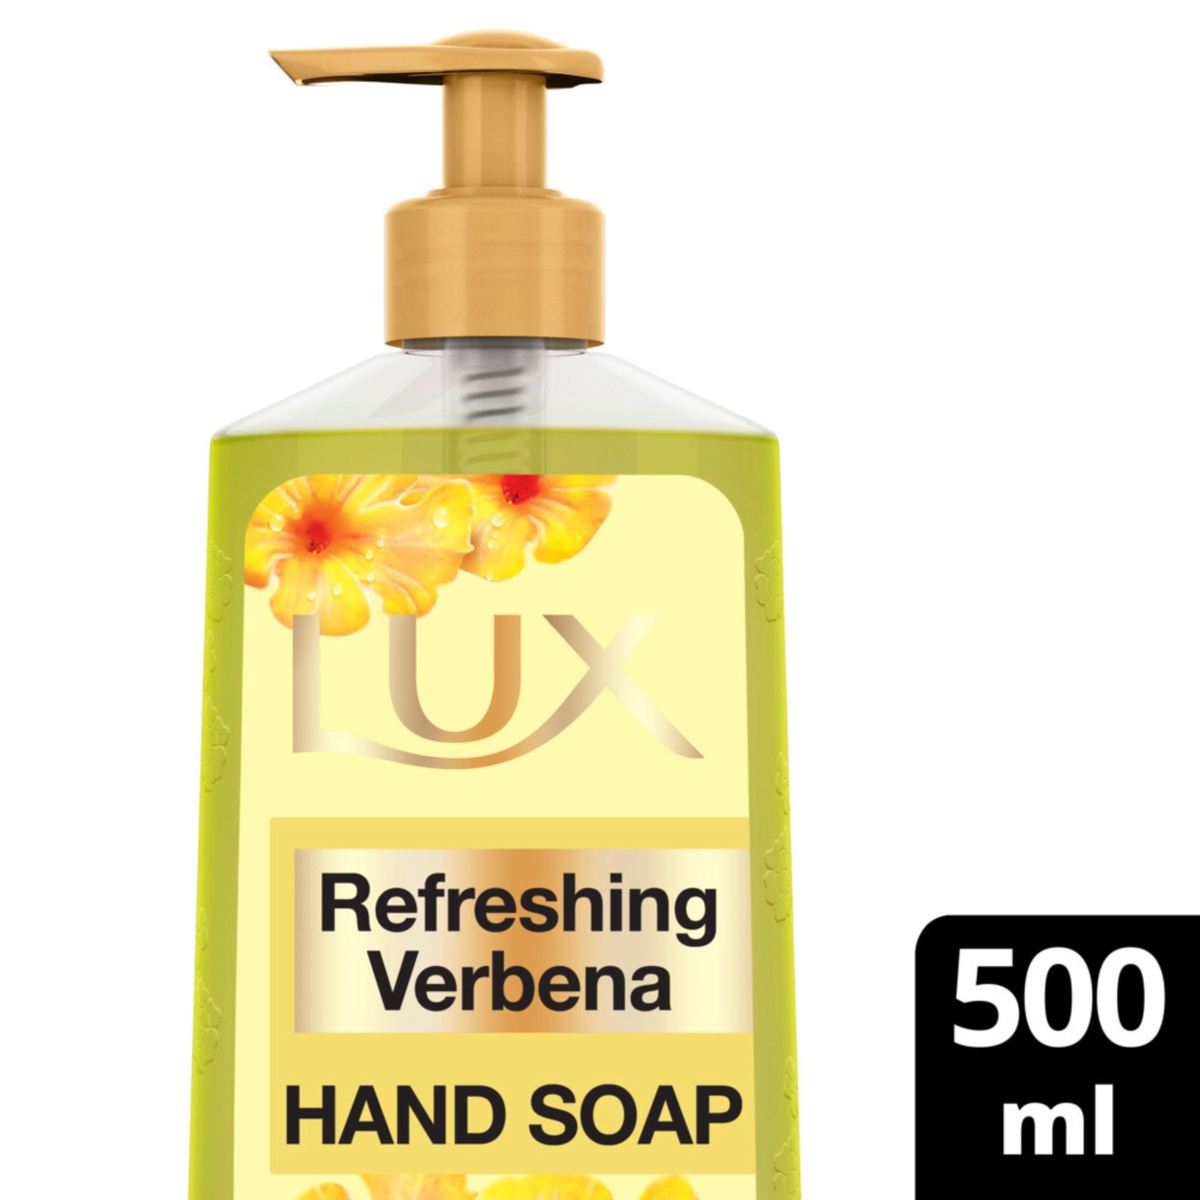 اشتري قم بشراء لوكس صابون اليدين المعطر المنعش 500 مل Online at Best Price من الموقع - من لولو هايبر ماركت Liquid Hand Wash في السعودية